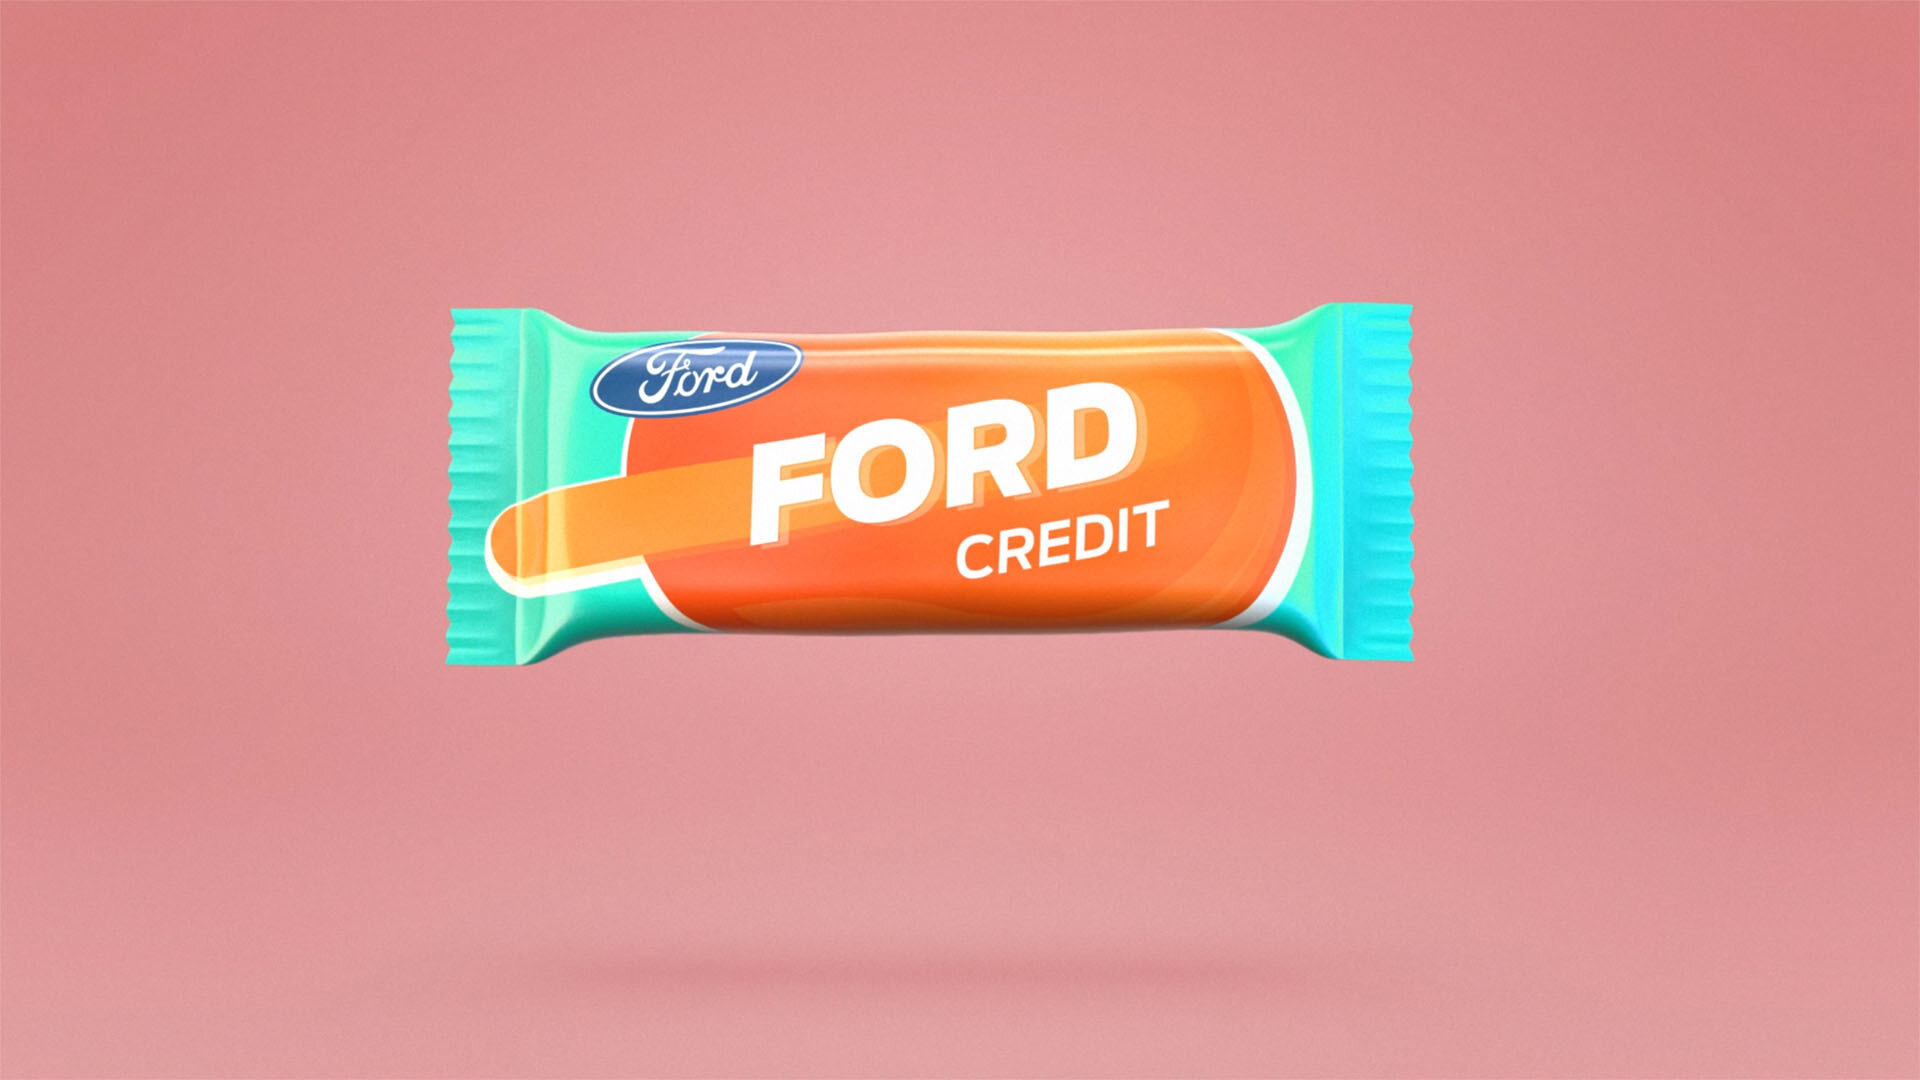 Ford-Credit-stills-1.jpg